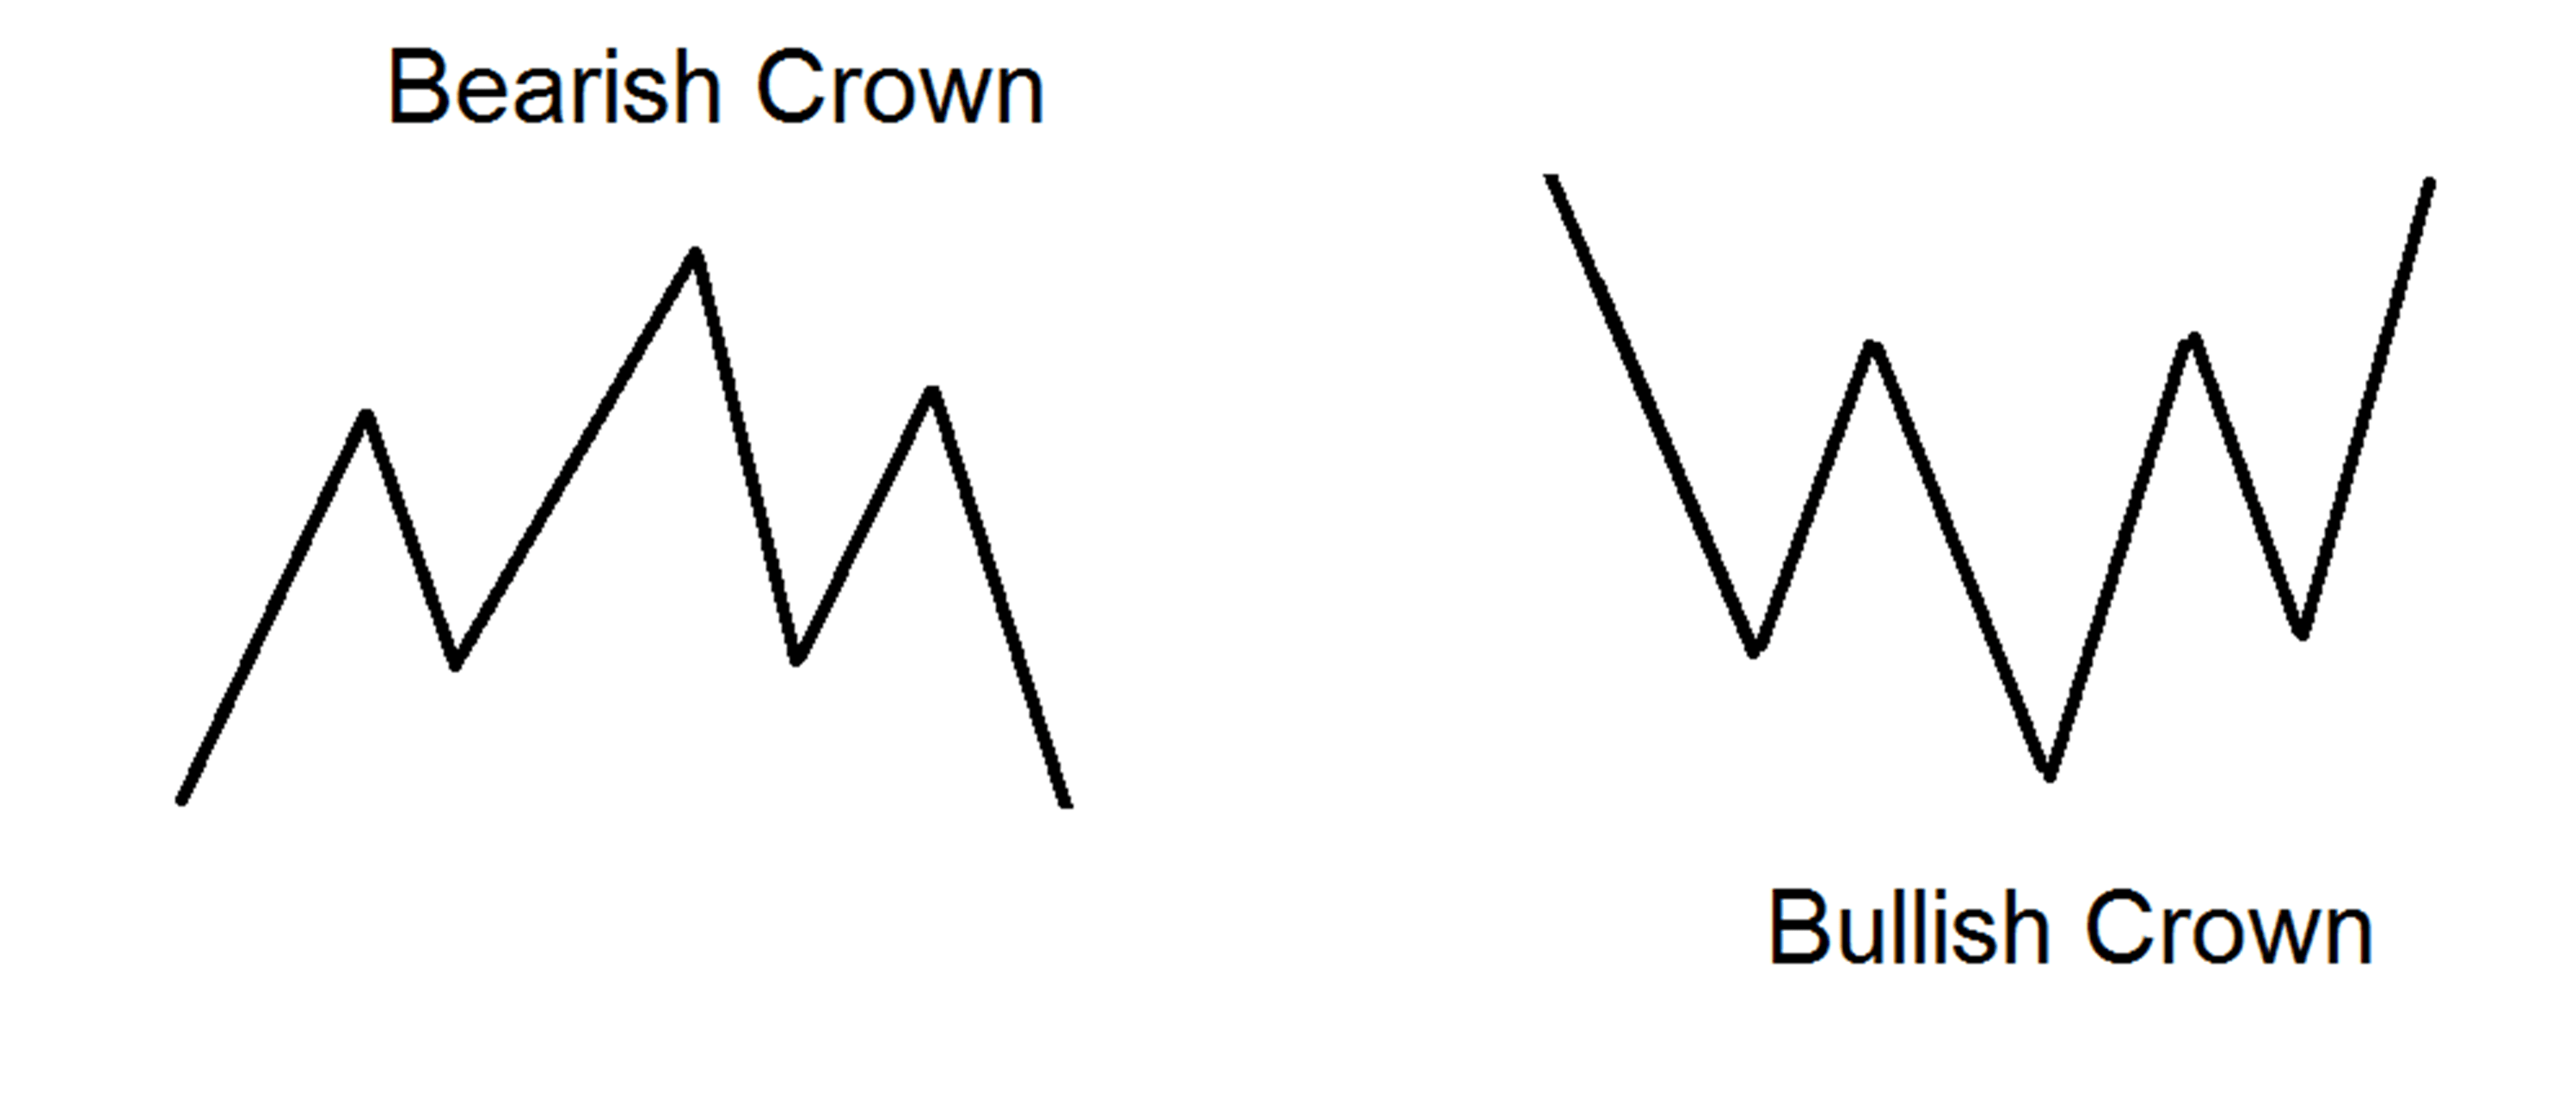 "Head & Shoulders" or "King's Crown" pattern